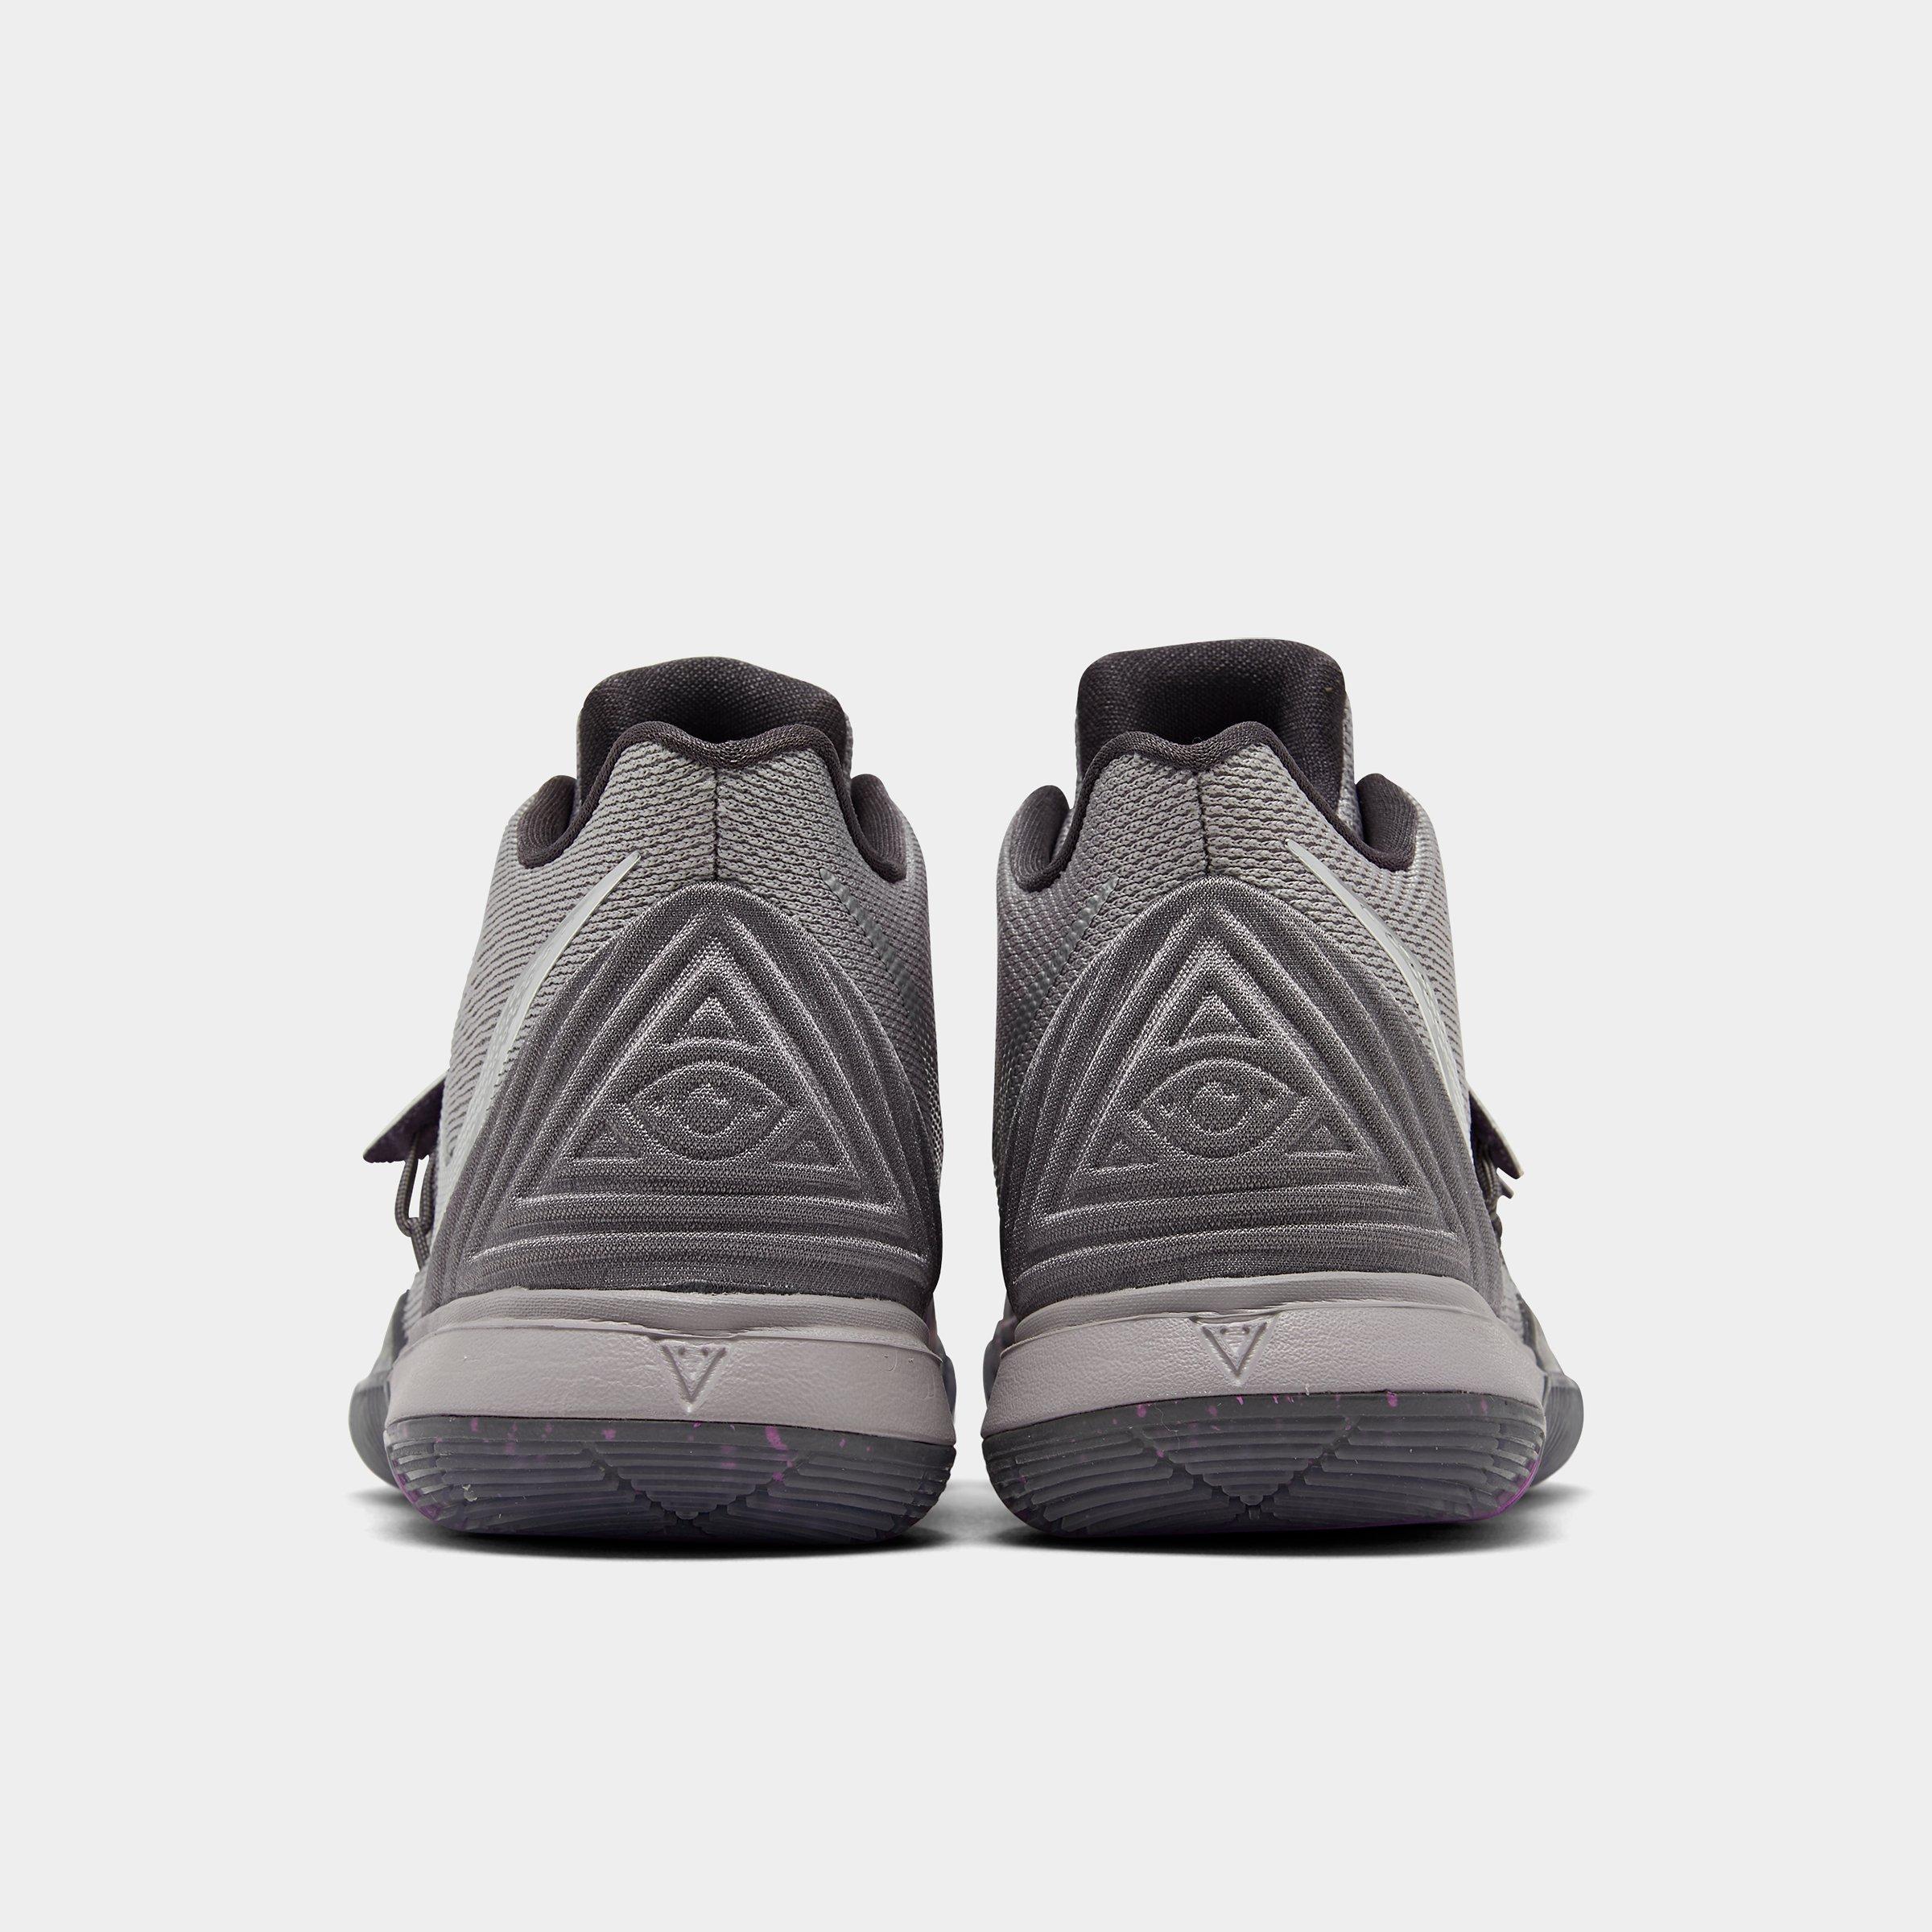 Sepatu Basket Nike Kyrie 5 High Squidward Tentacles